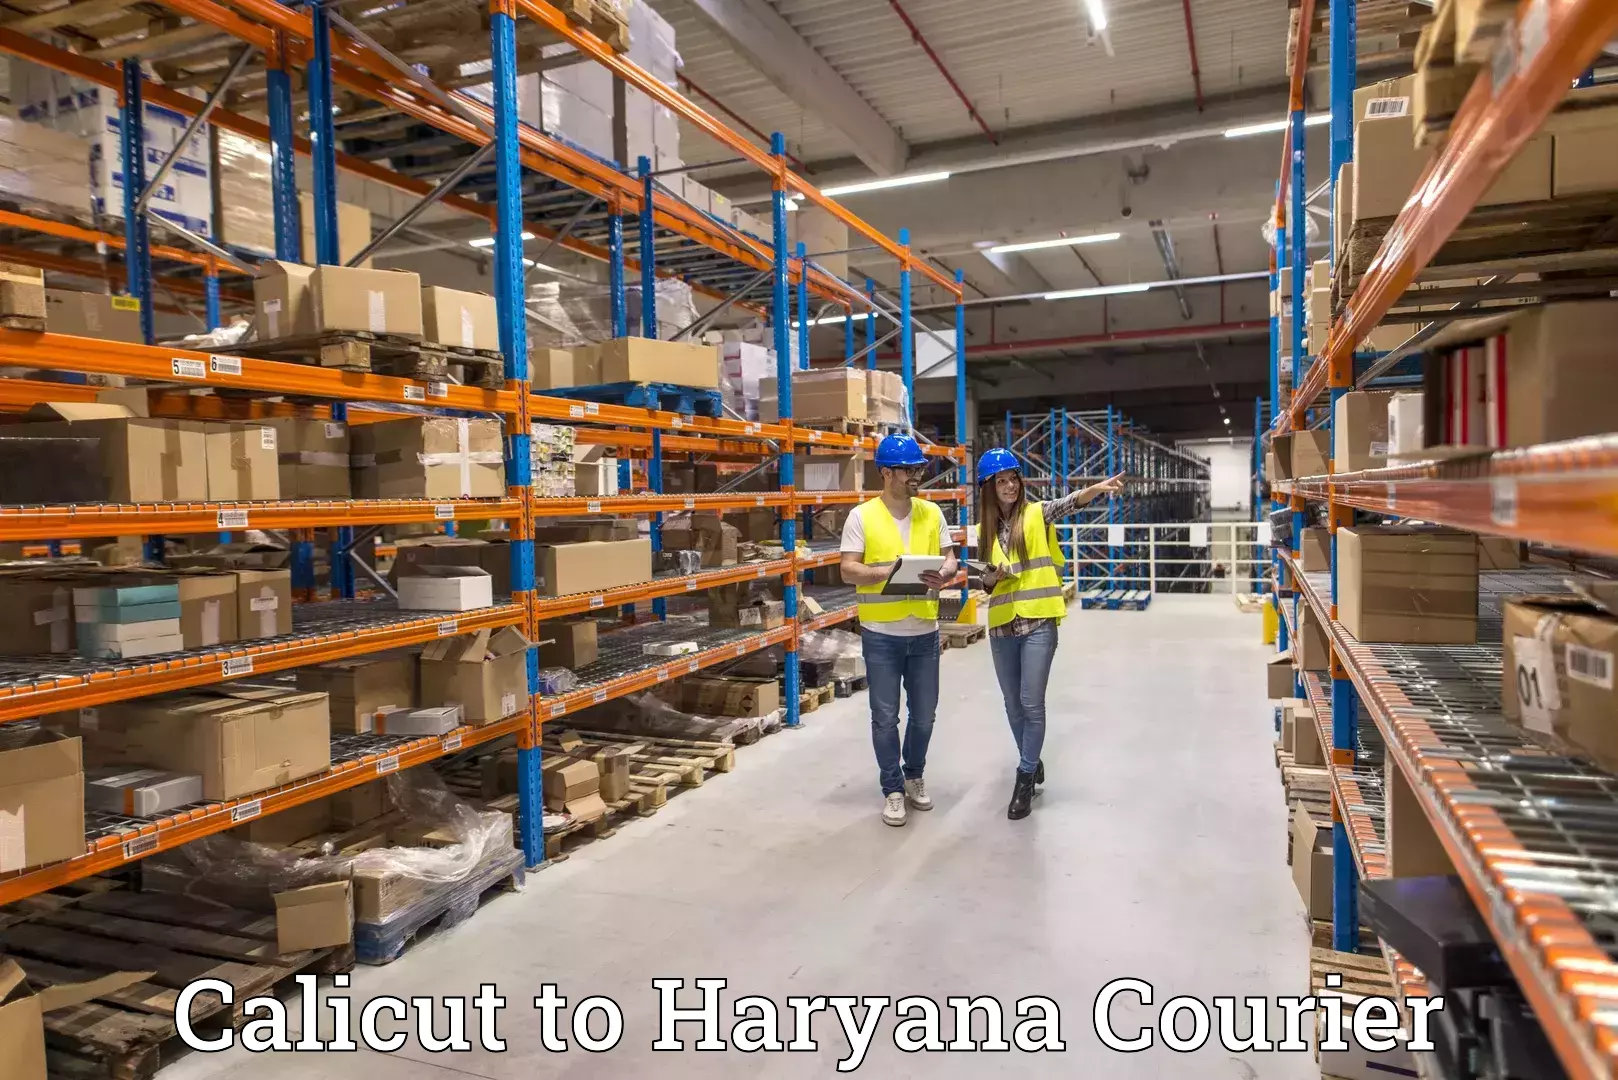 Customer-centric shipping Calicut to Haryana